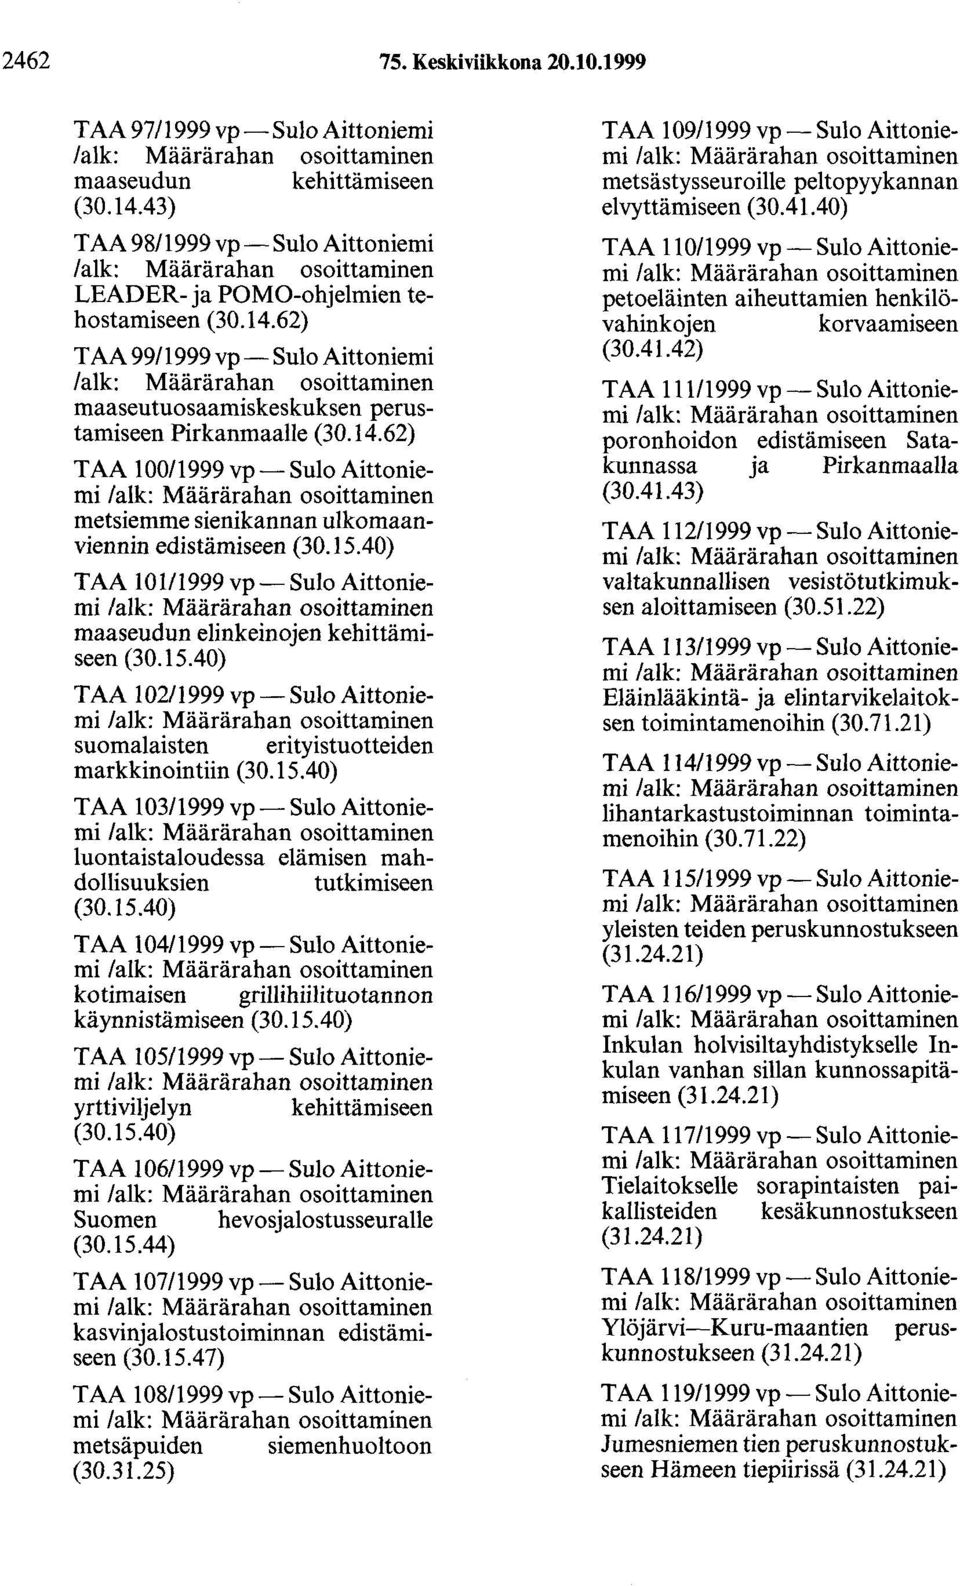 15.40) T AA 103/1999 vp- Sulo Aittoniemi luontaistaloudessa elämisen mahdollisuuksien tutkimiseen (30.15.40) T AA 104/1999 vp - Sulo Aittoniemi kotimaisen grillihiilituotannon käynnistämiseen (30.15.40) TAA 105/1999 vp- Sulo Aittoniemi yrttiviljelyn kehittämiseen (30.